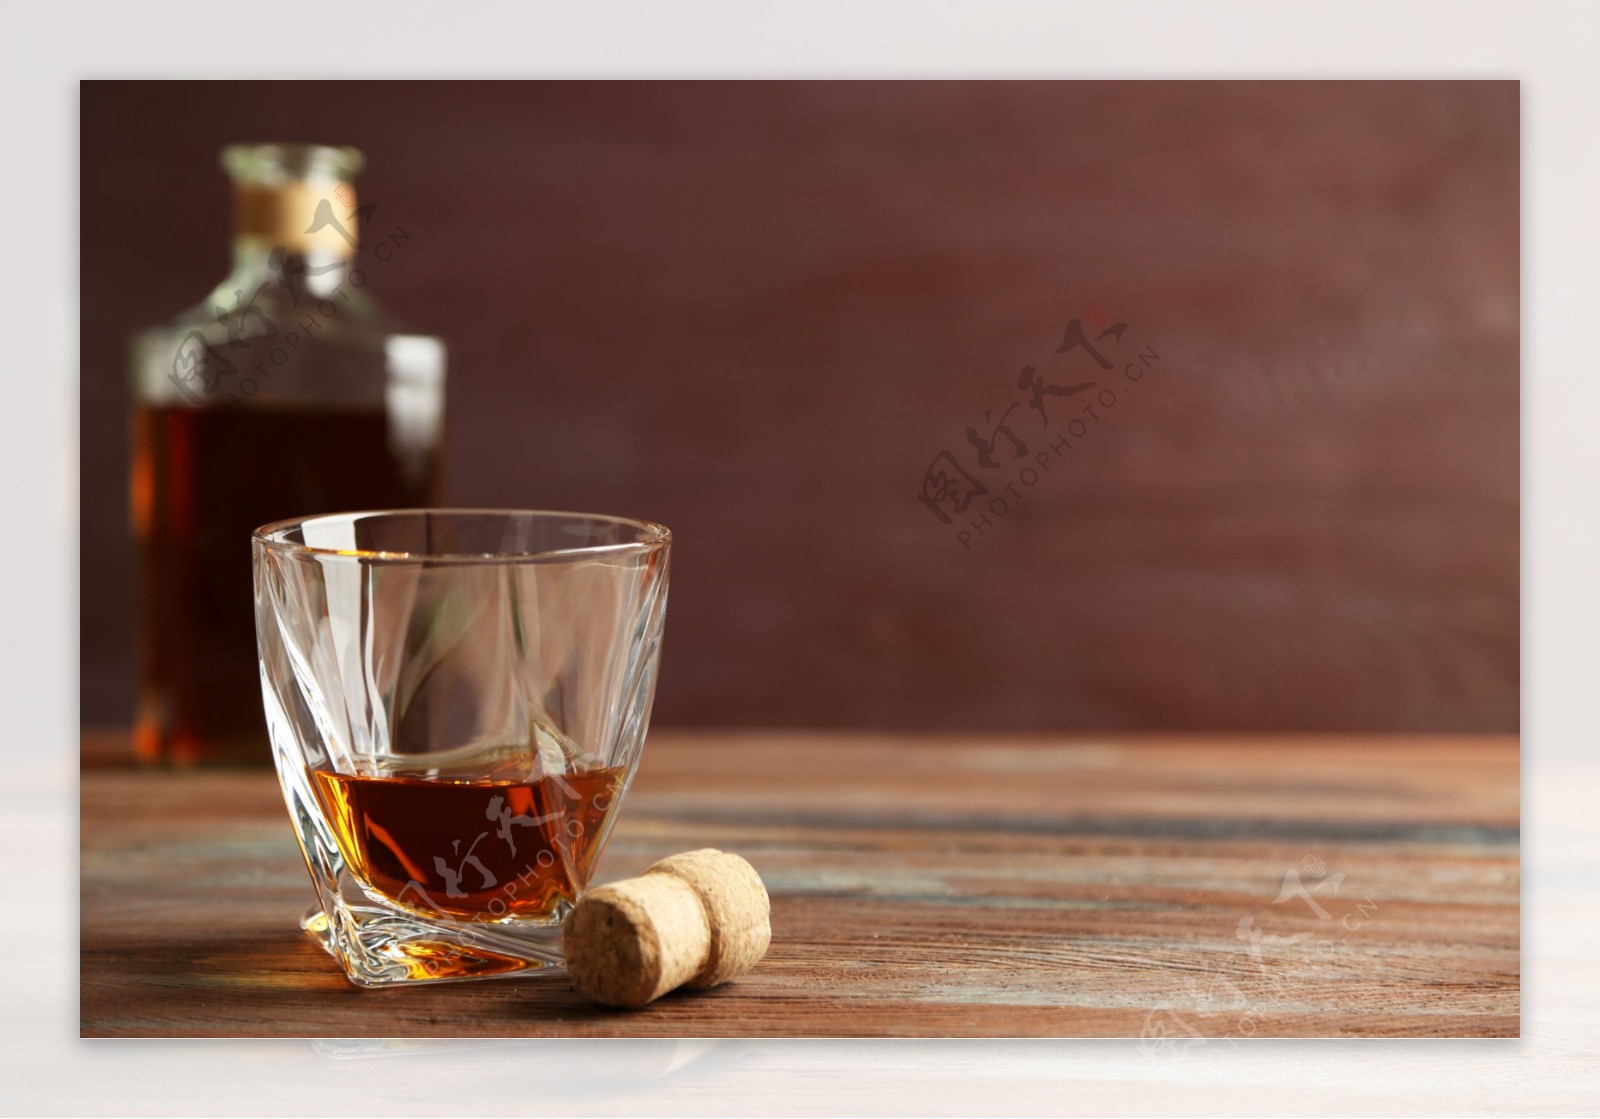 瓶塞与威士忌洋酒图片